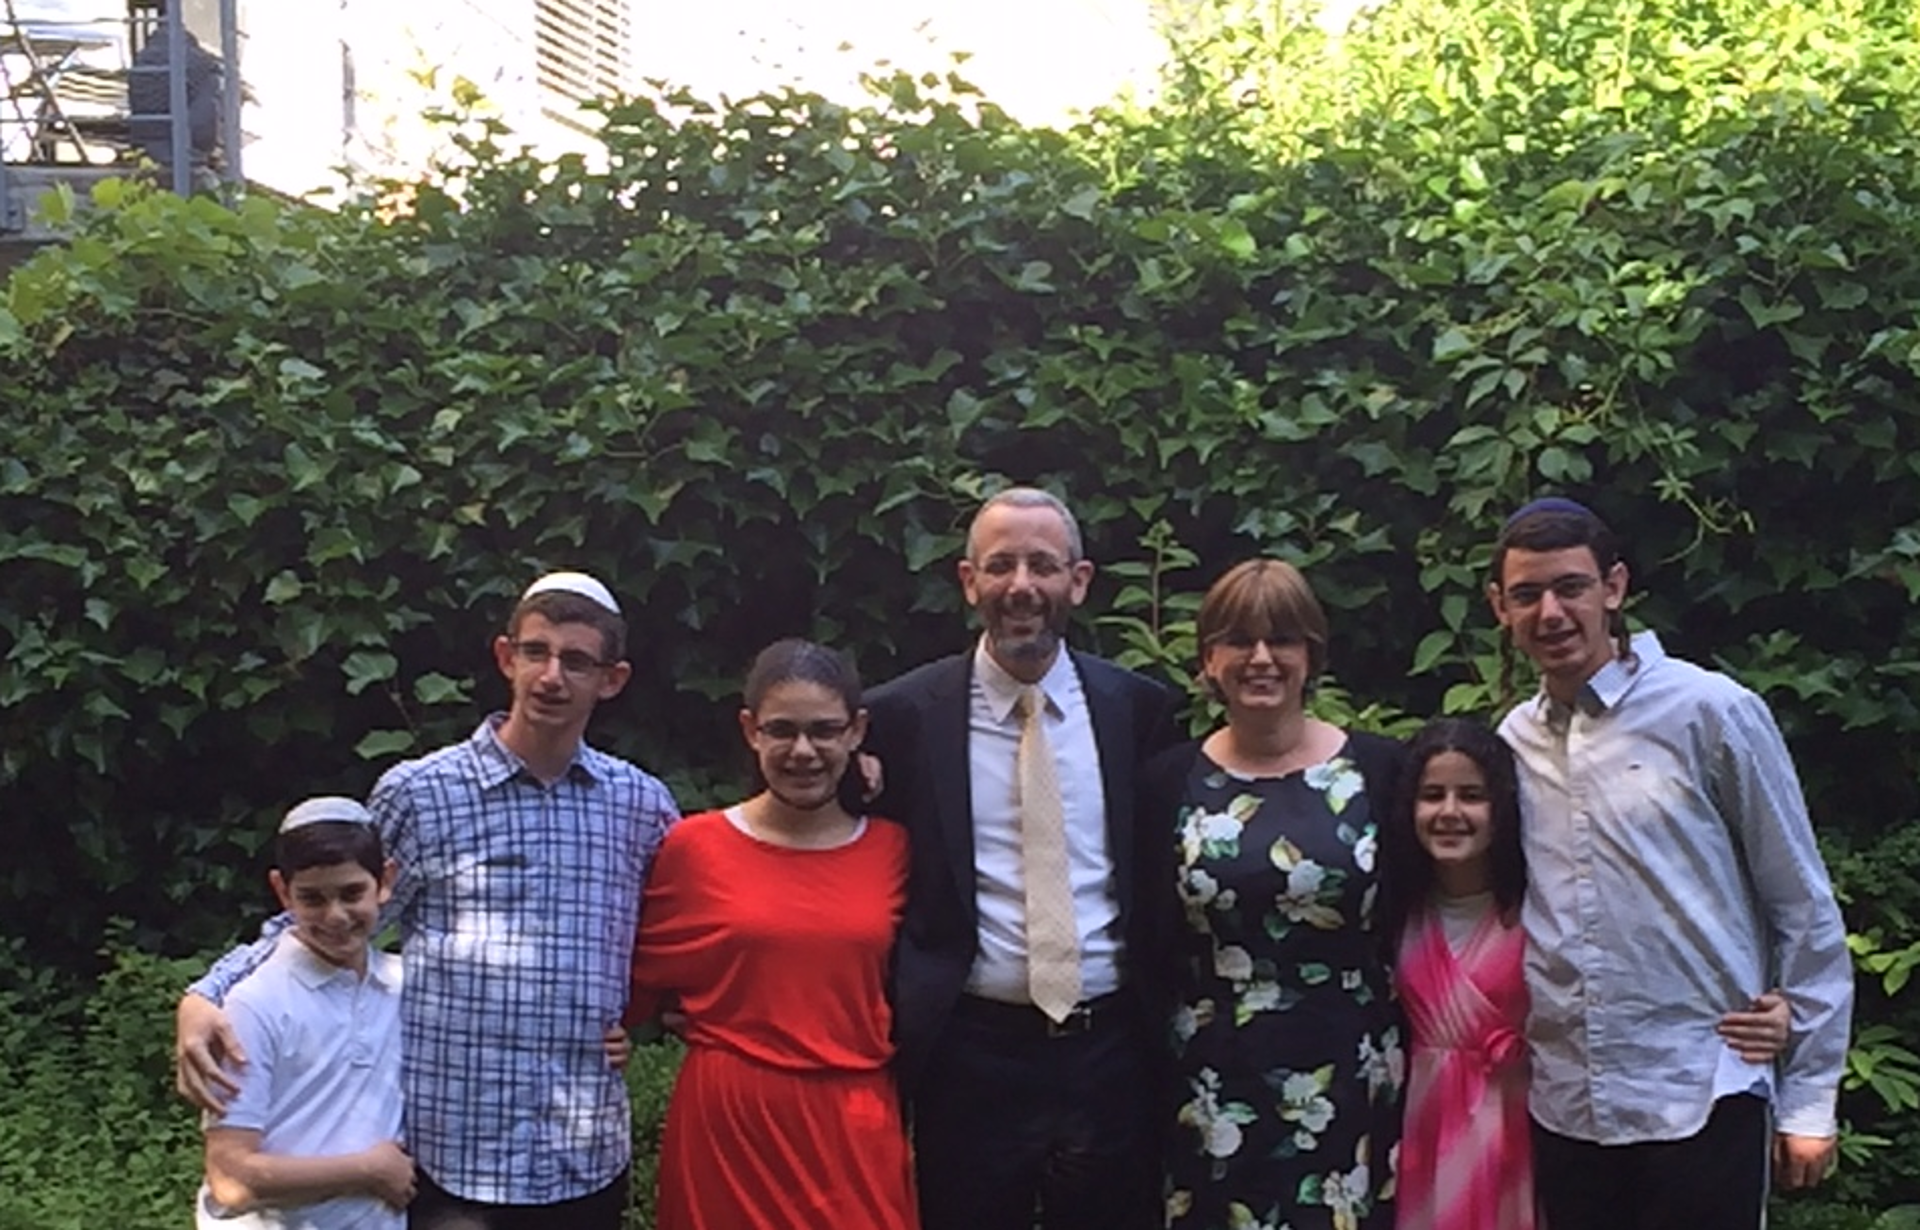 Bereit zur Rückkehr nach Israel: der bisherige Basler Rabbiner Yaron Nisenholz mit Familie